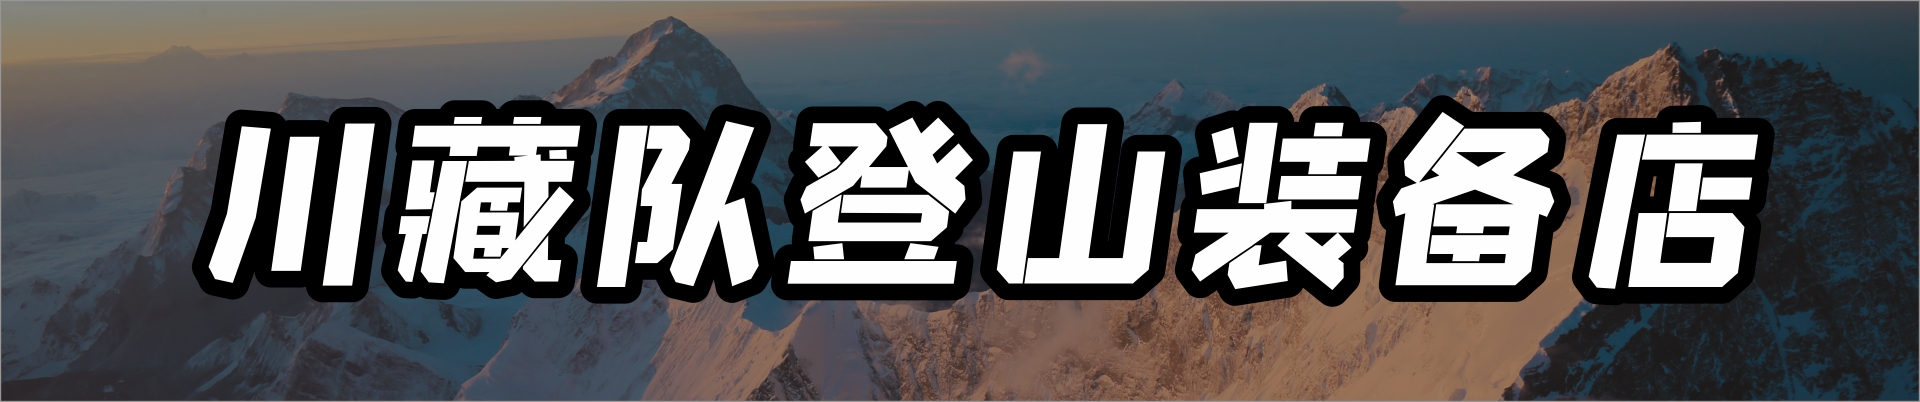 成都川藏登山运动服务有限责任公司公司介绍